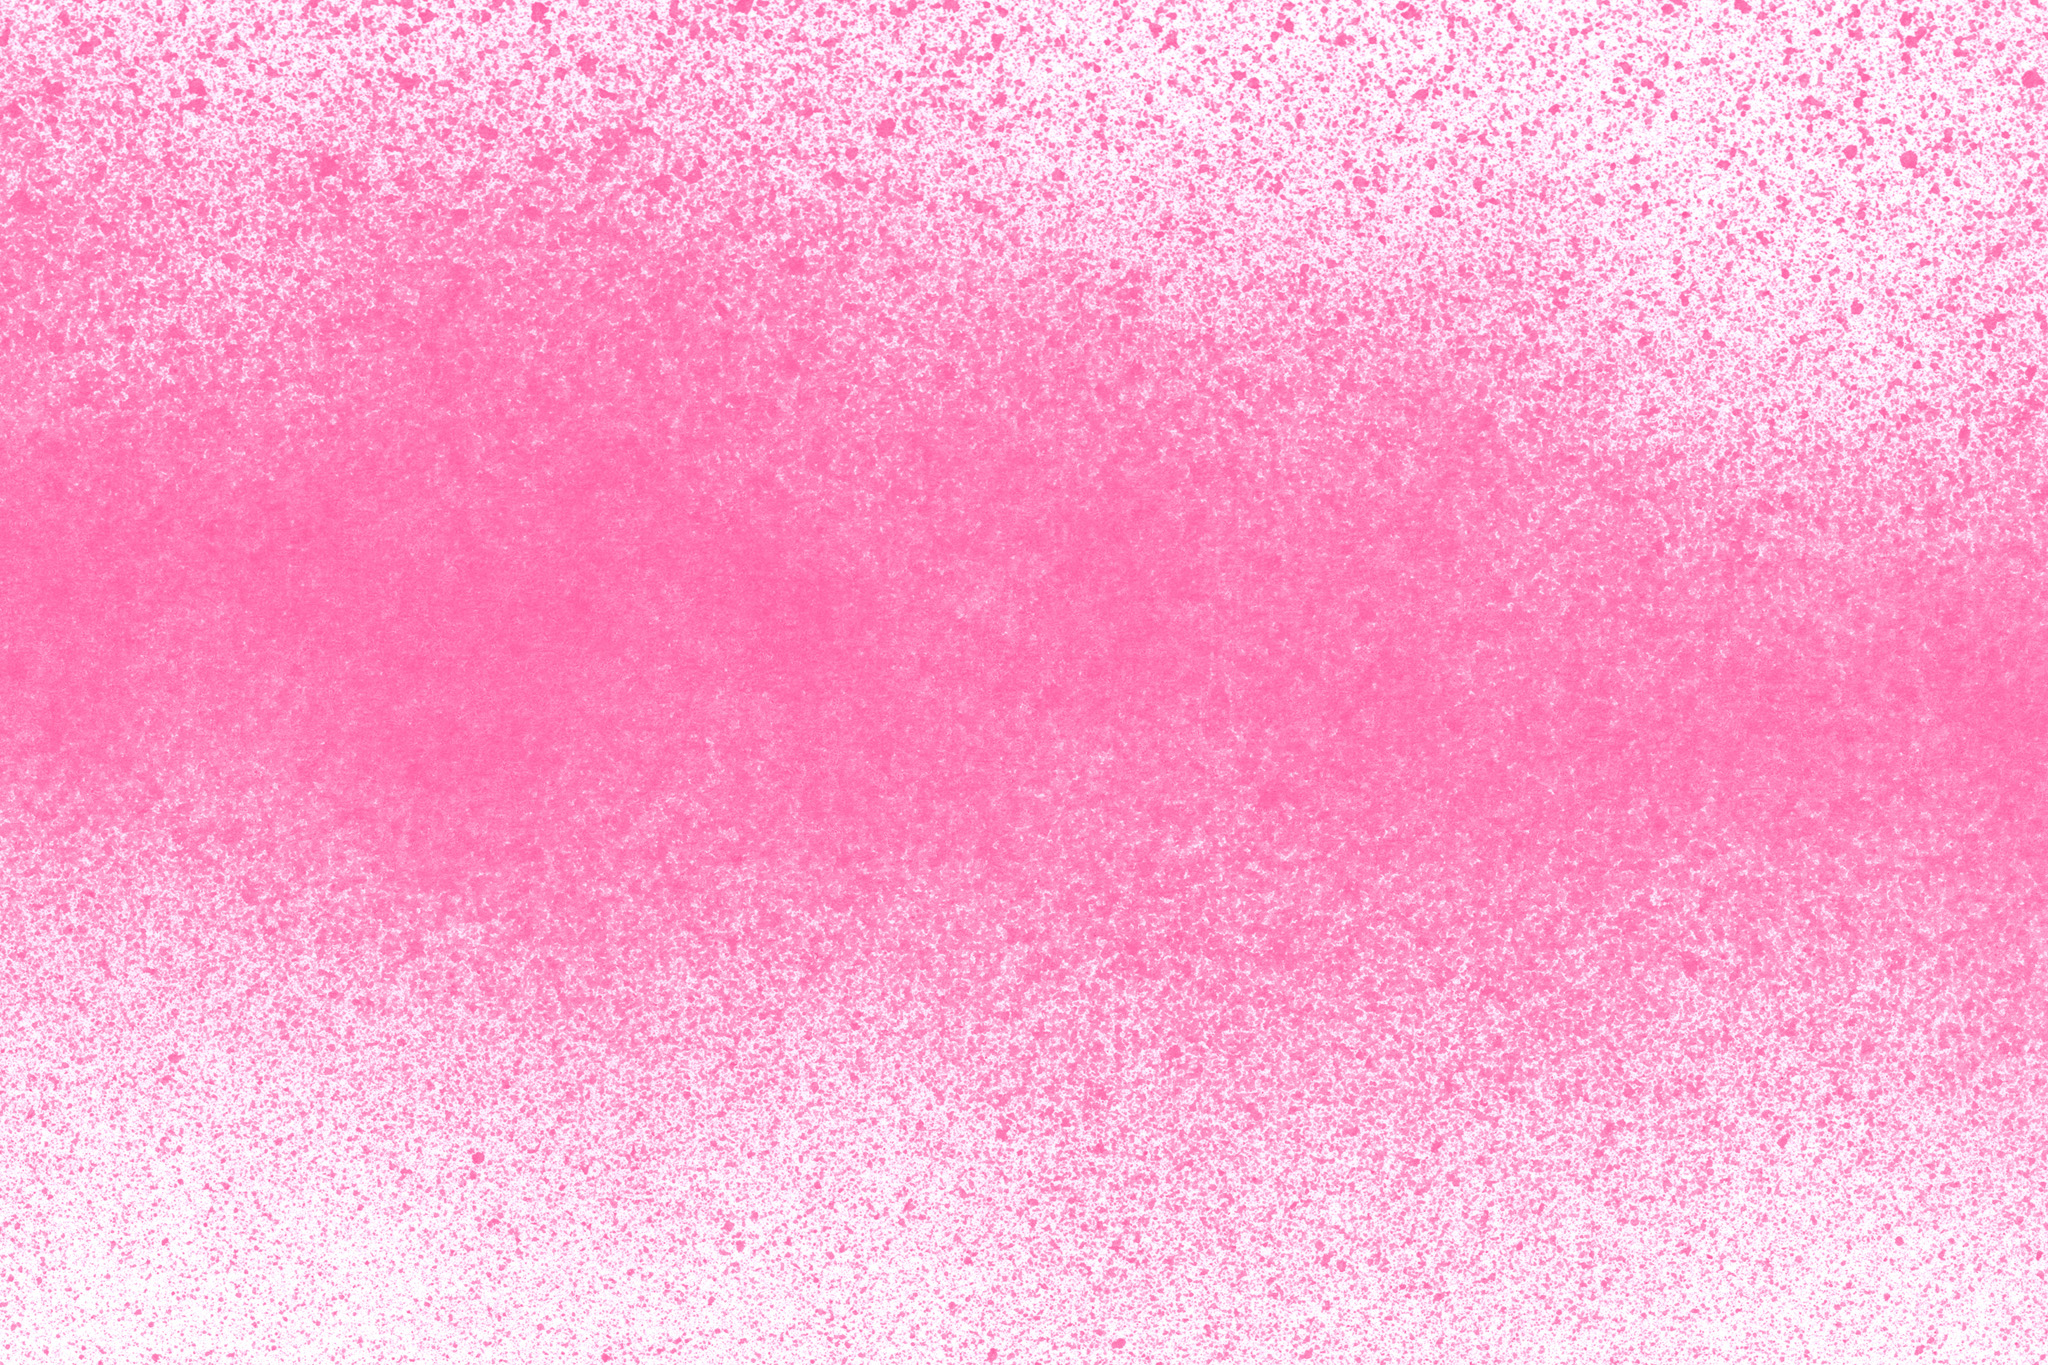 背景がピンクの無地の壁紙 の画像素材を無料ダウンロード 1 フリー素材 Beiz Images